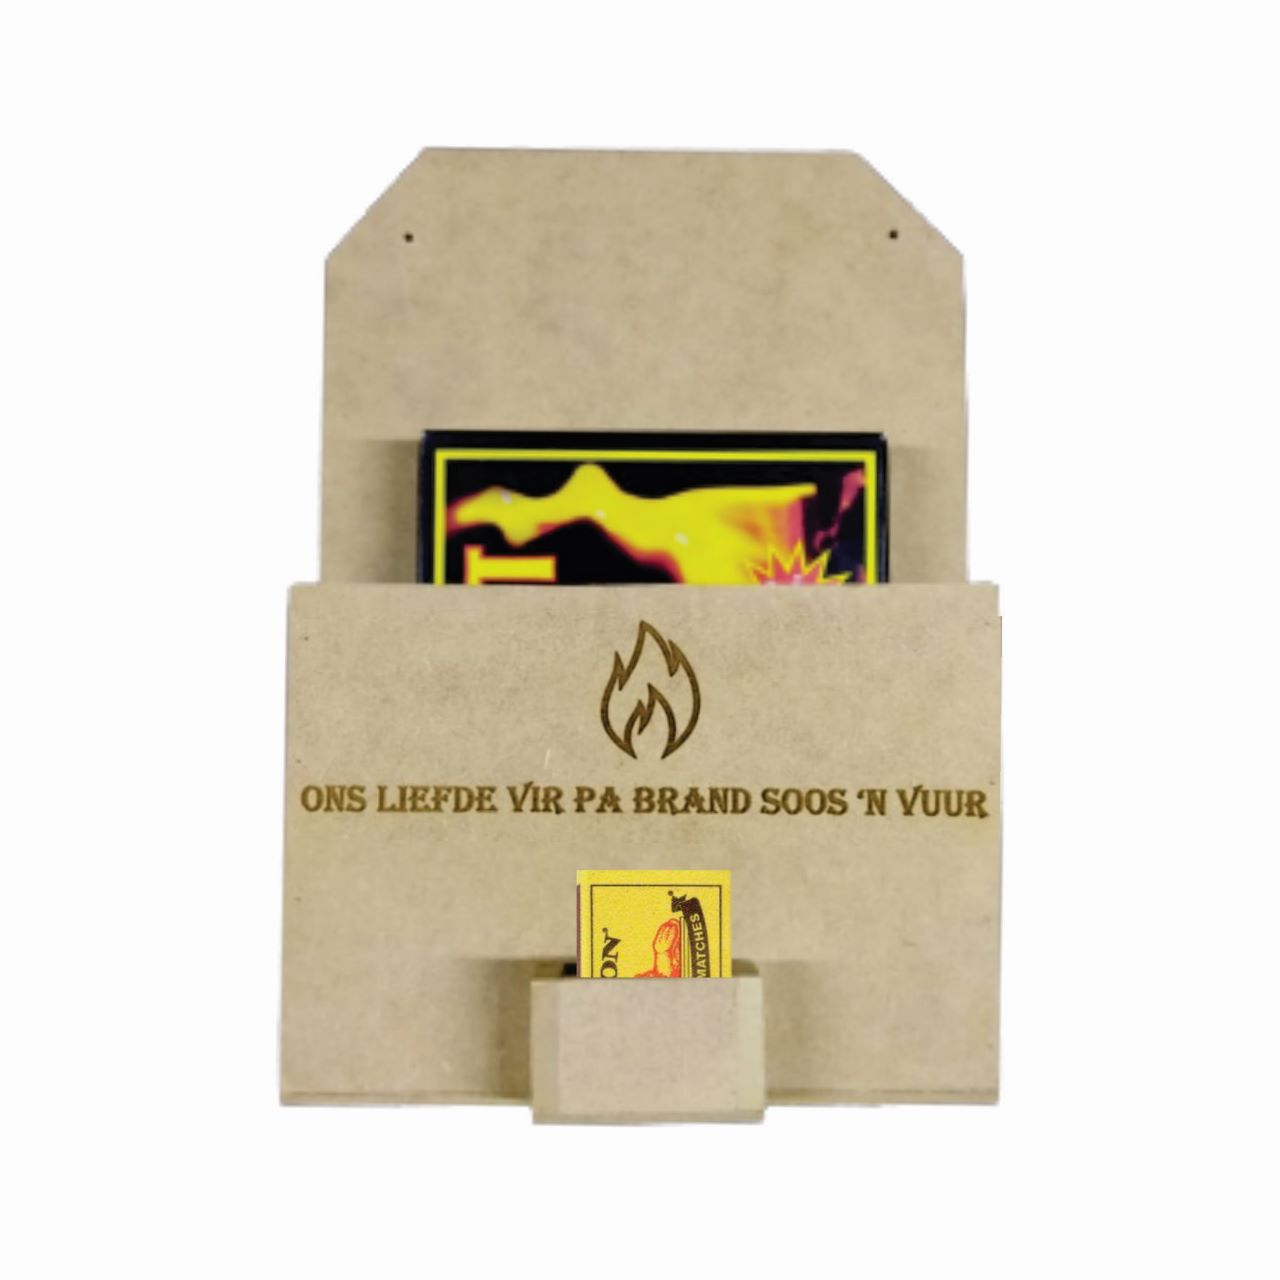 Wooden firefighter box